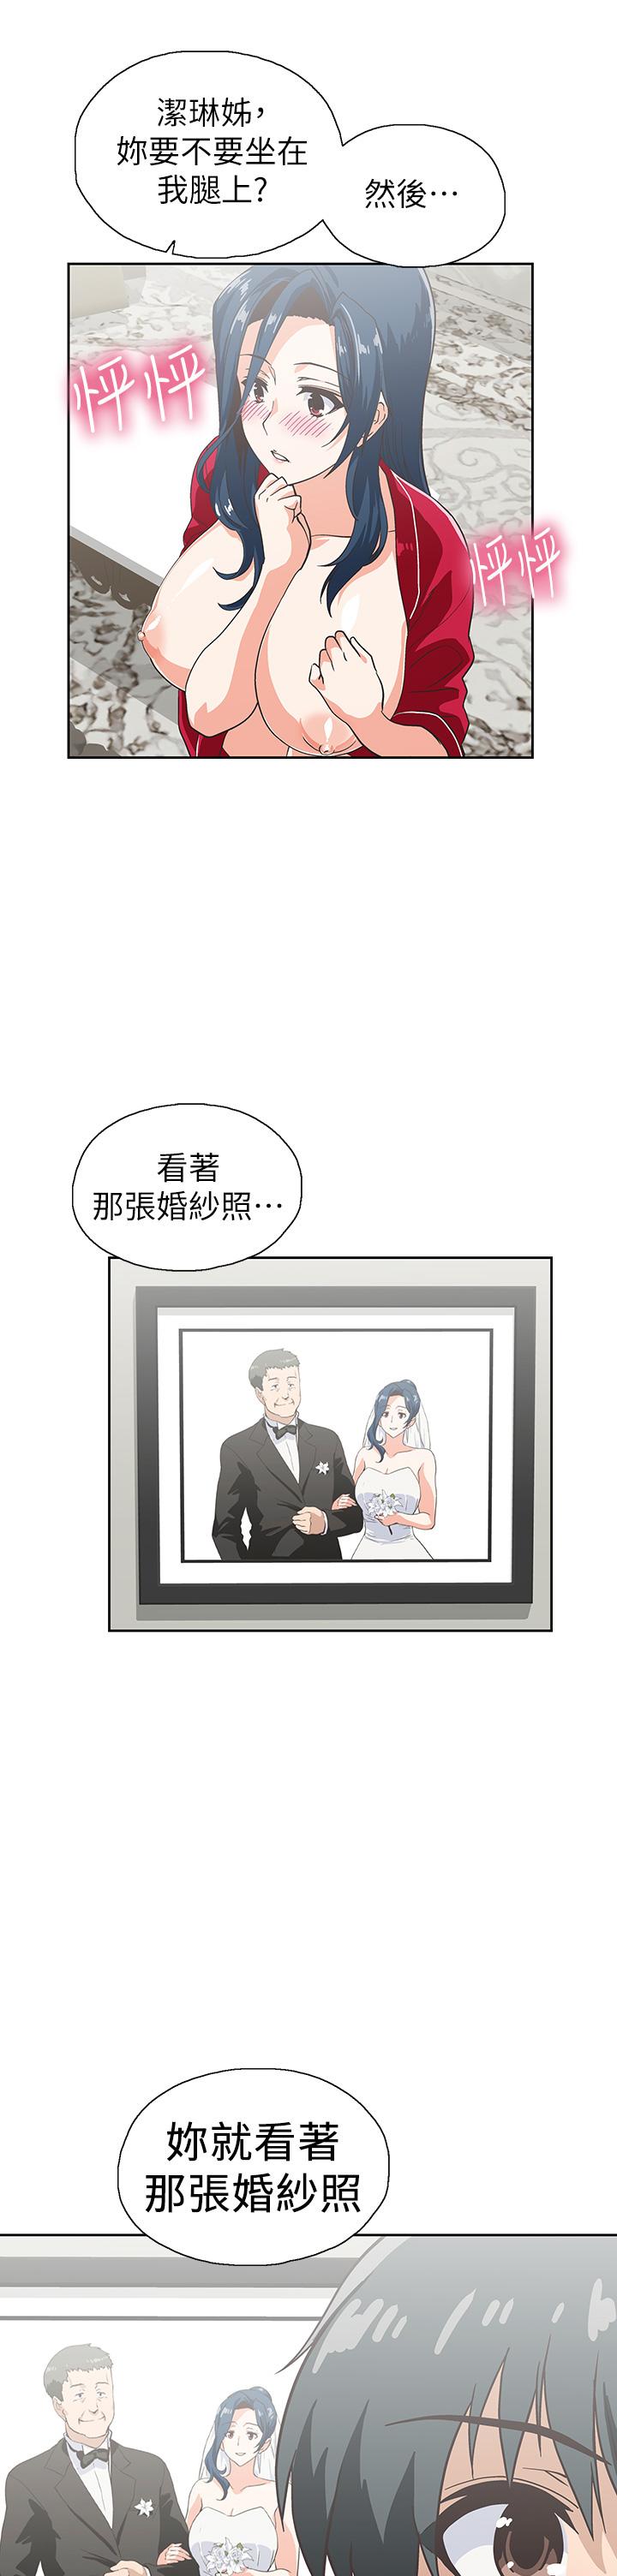 《梦幻速食店》漫画 第31话-有夫之妇专属的禁断快感